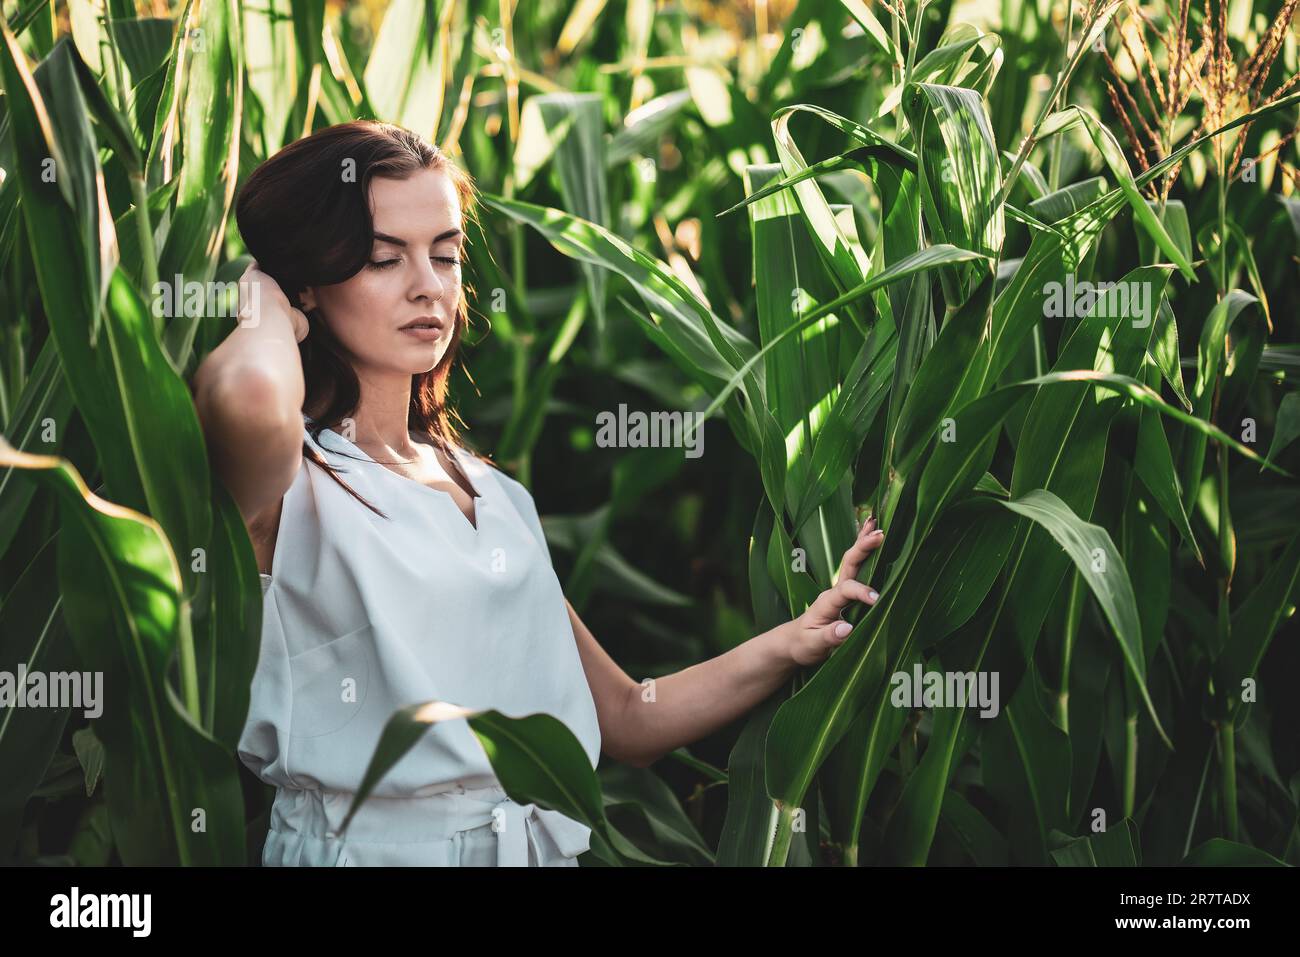 Jeune belle femme avec des cheveux bruns dans le champ de maïs Banque D'Images